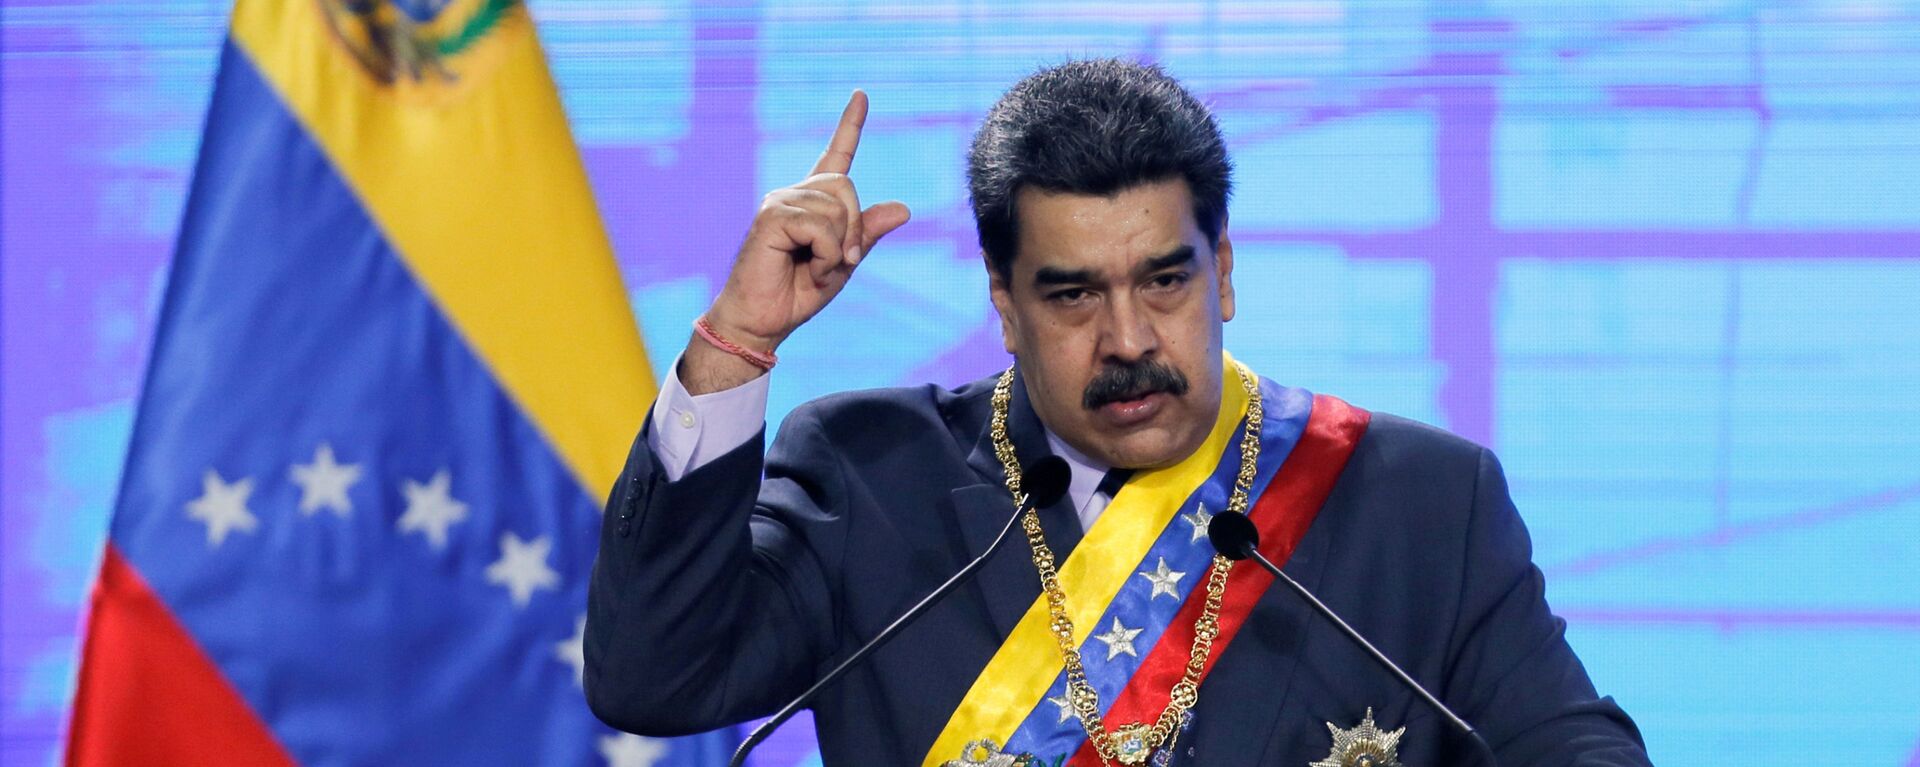 Nicolás Maduro, presidente de Venezuela - Sputnik Mundo, 1920, 22.02.2021